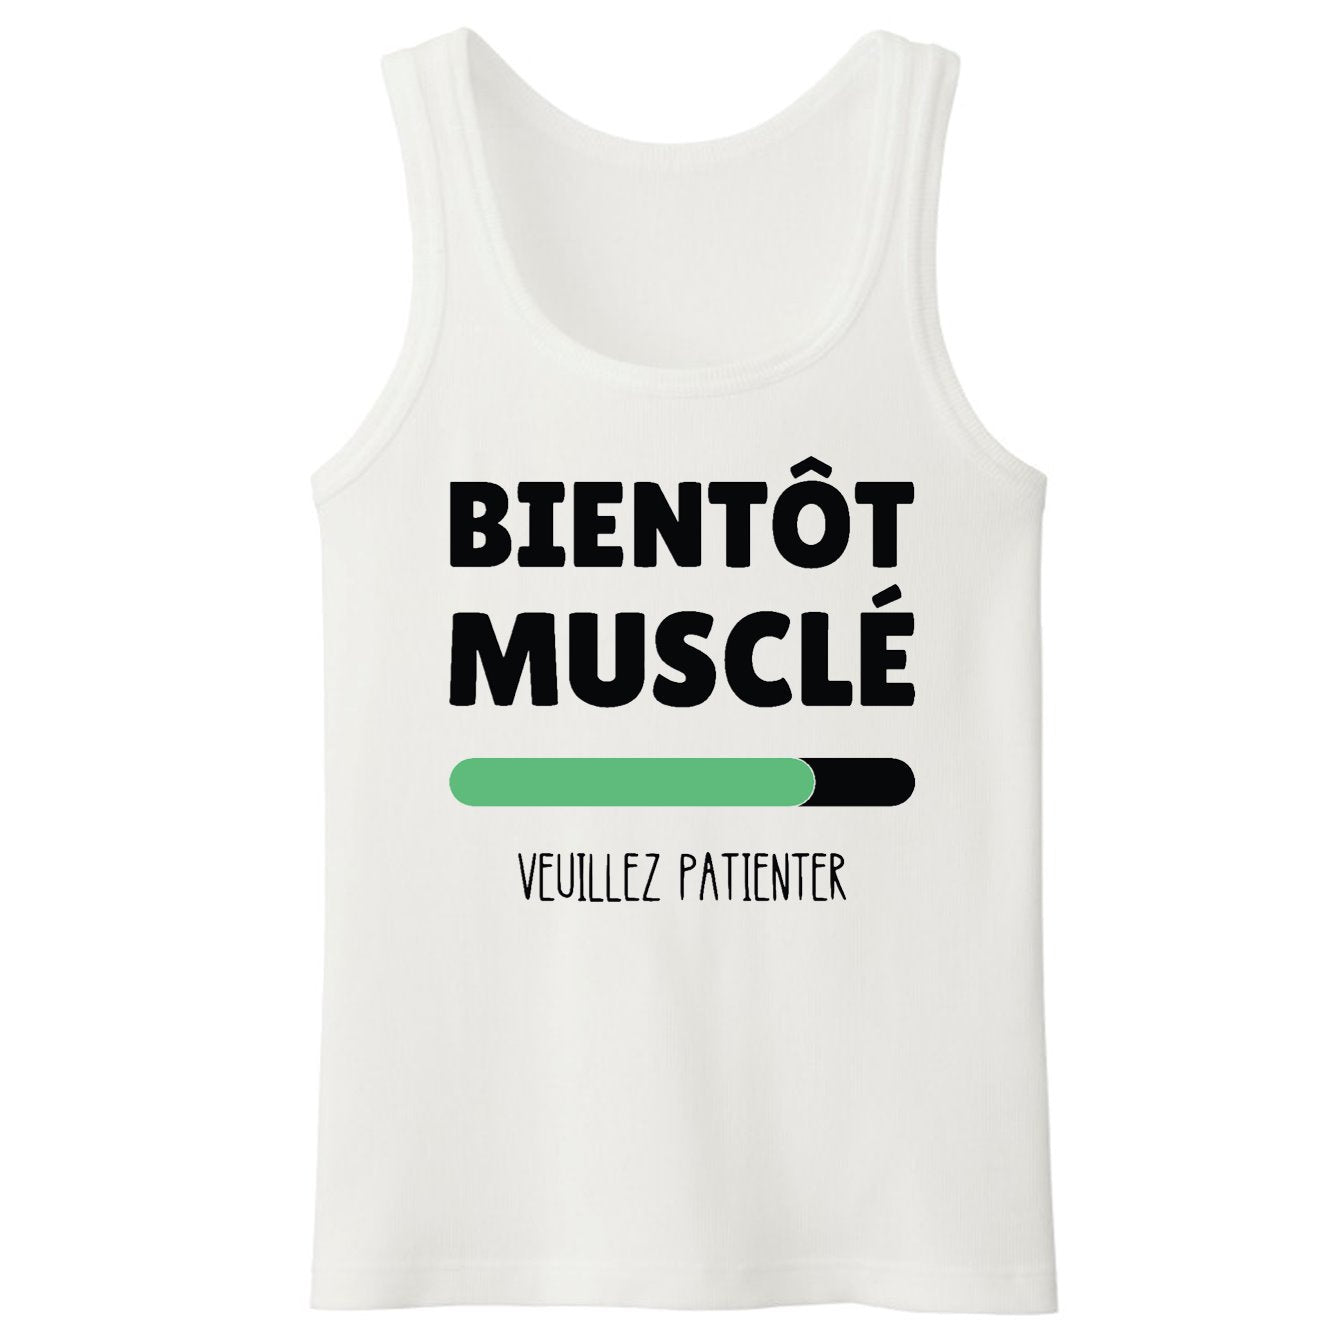 https://tshirt-culte.com/cdn/shop/products/debardeur-homme-bientot-muscle-633558.jpg?v=1691343185&width=1406